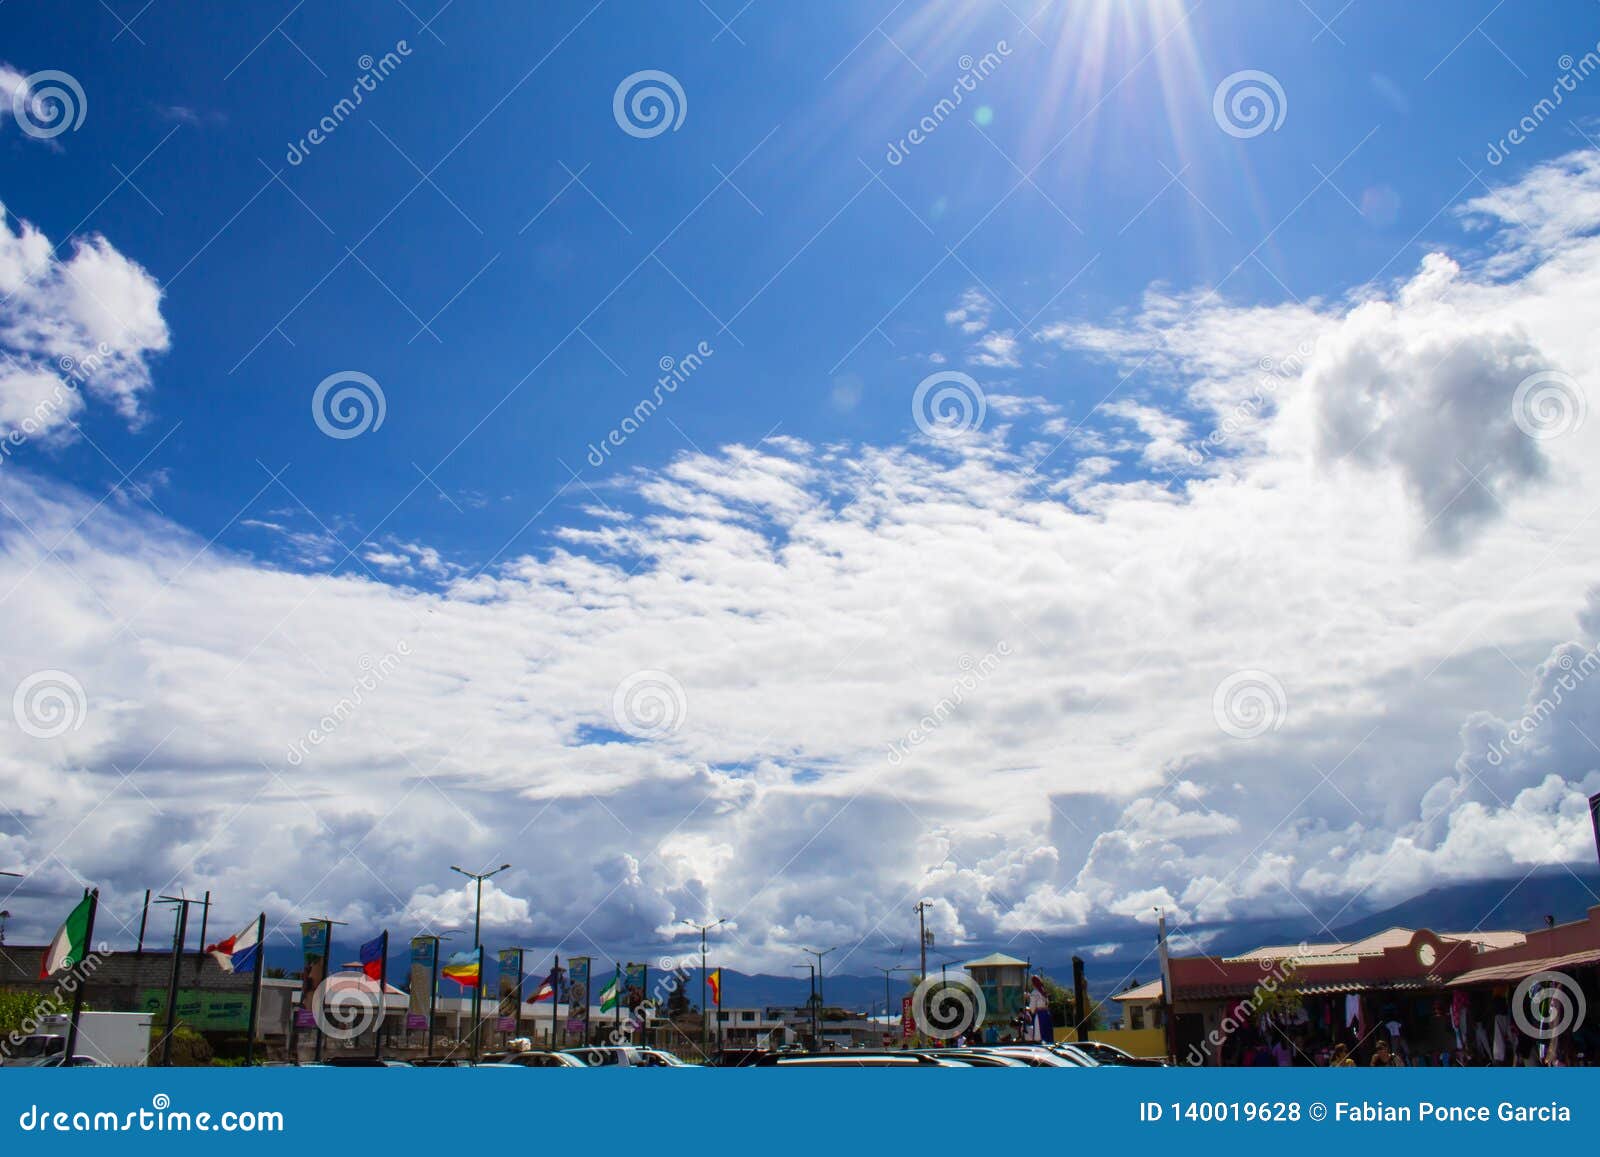 Fantastischer Himmel durch die Wolken über einem touristischen Quadrat. Unter einem großartigen Himmel mit flaumigen Wolken finden Sie einen Marktplatz mit Flaggen